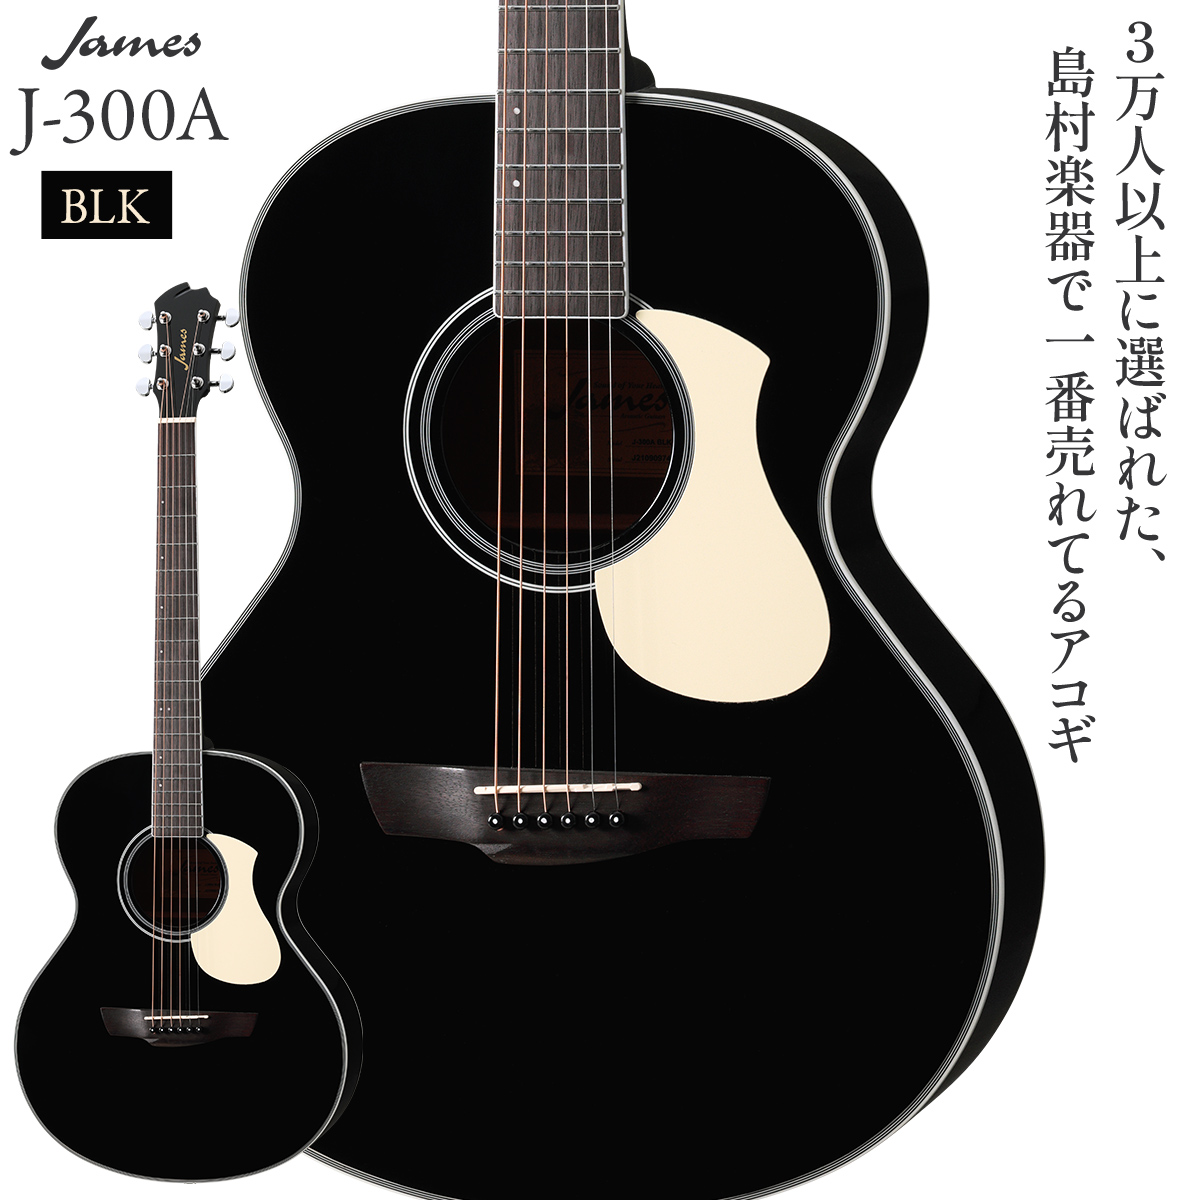 James J-300A Black アコースティックギター oooタイプ ジェームス ...